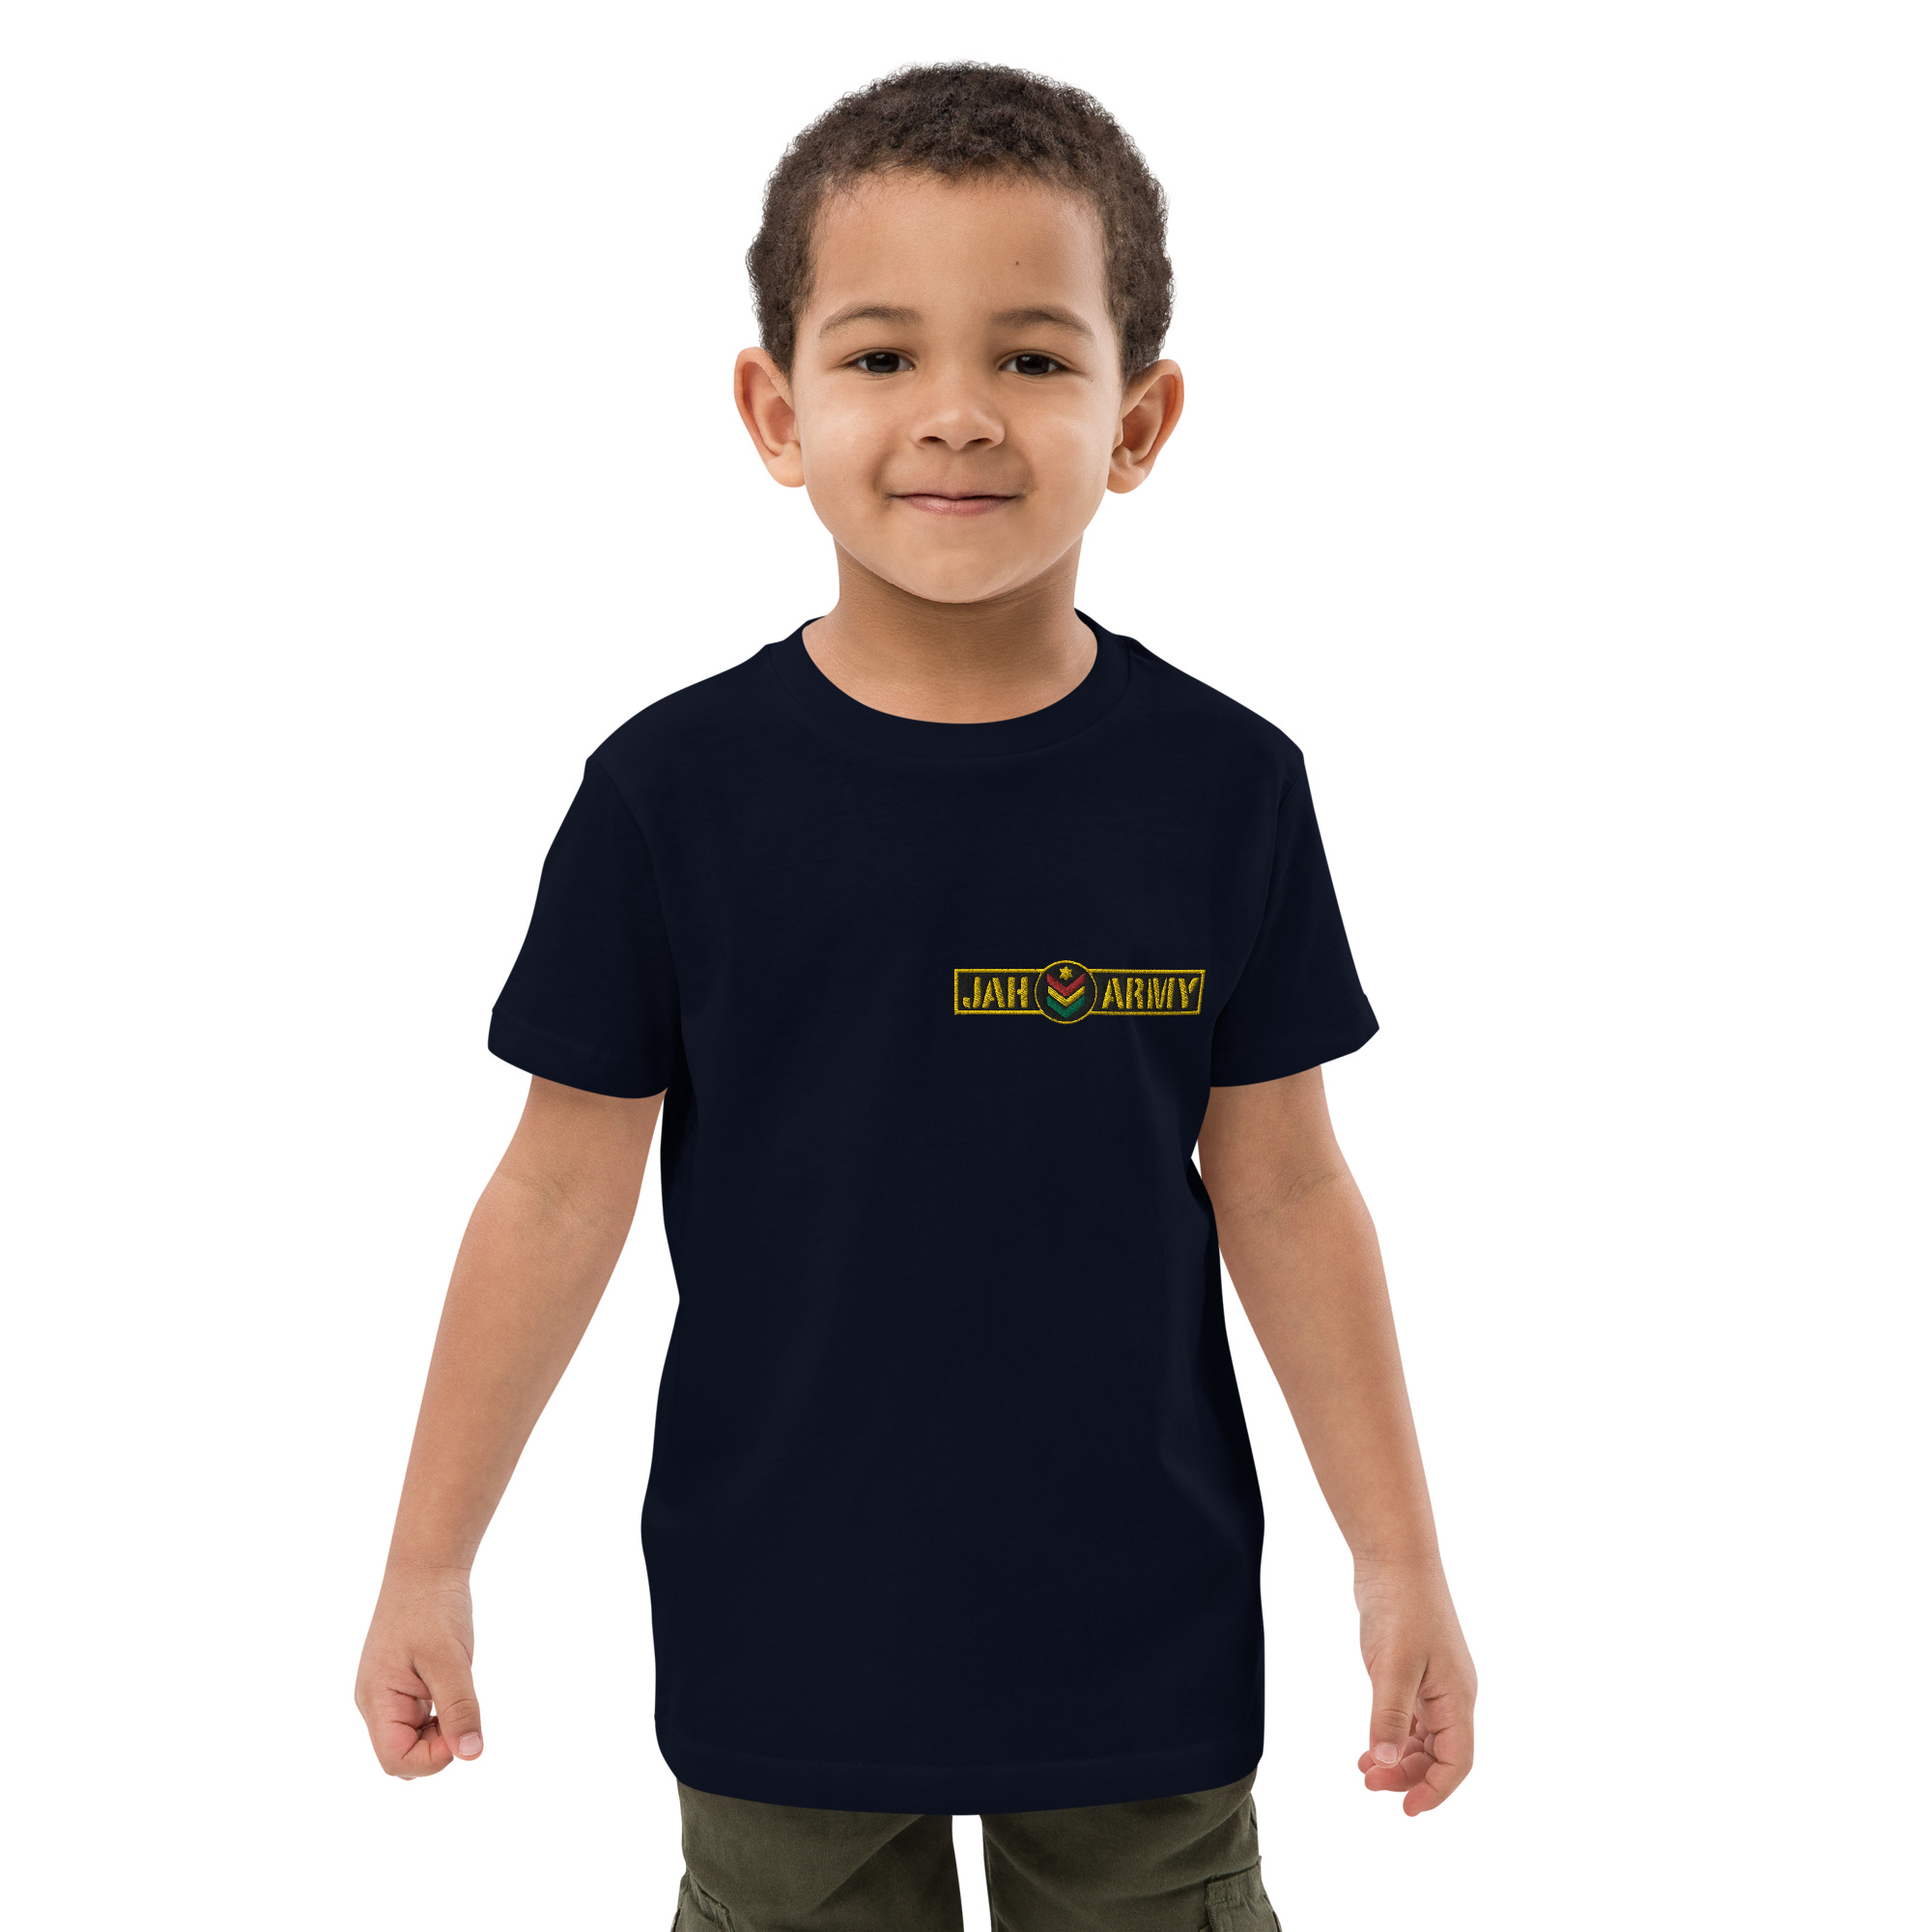 Camicia per bambini in cotone organico Jah Army